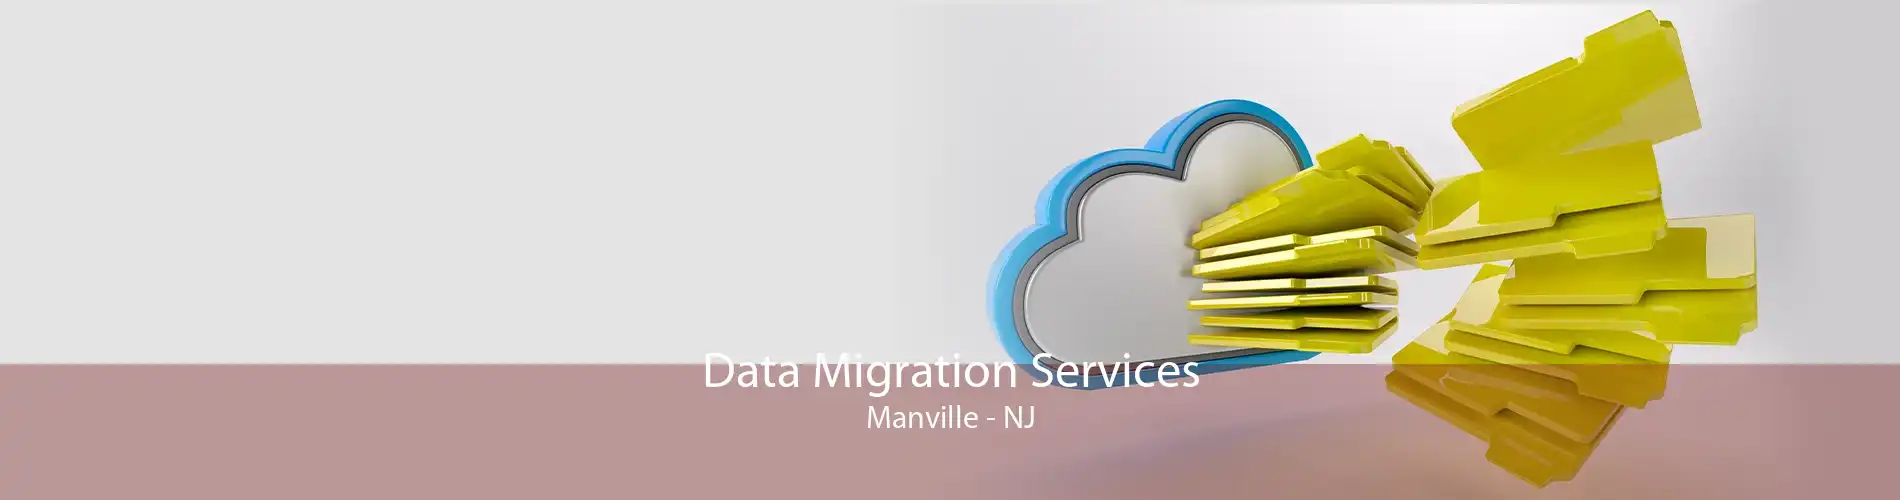 Data Migration Services Manville - NJ